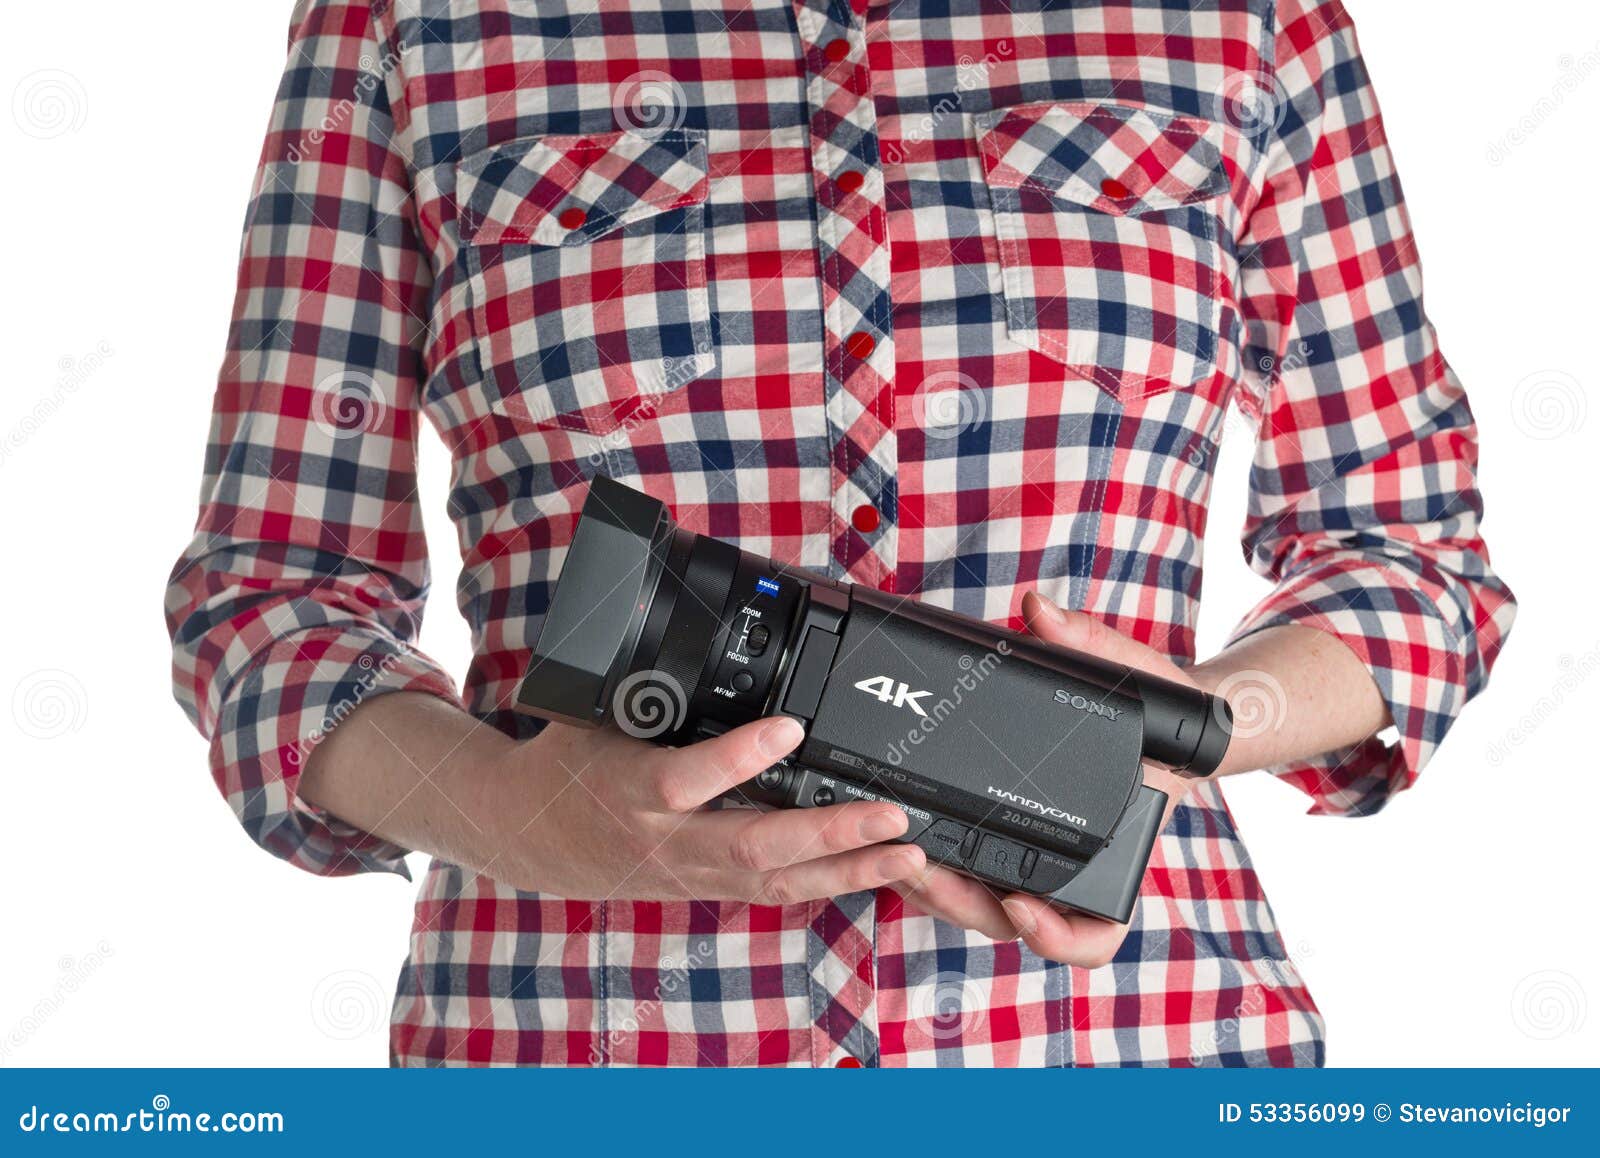 Hình ảnh editorial về máy quay Sony FDR AX100 4k UHD Handycam là một cách tuyệt vời để khám phá và trải nghiệm thế giới xung quanh. Hình ảnh này sẽ khiến bạn tò mò và muốn biết thêm về chất lượng và tính năng của máy quay này. Translation: The editorial image of the Sony FDR AX100 4k UHD Handycam Camcorder is a great way to explore and experience the world around you. This image will make you curious and want to learn more about the quality and features of this camcorder.